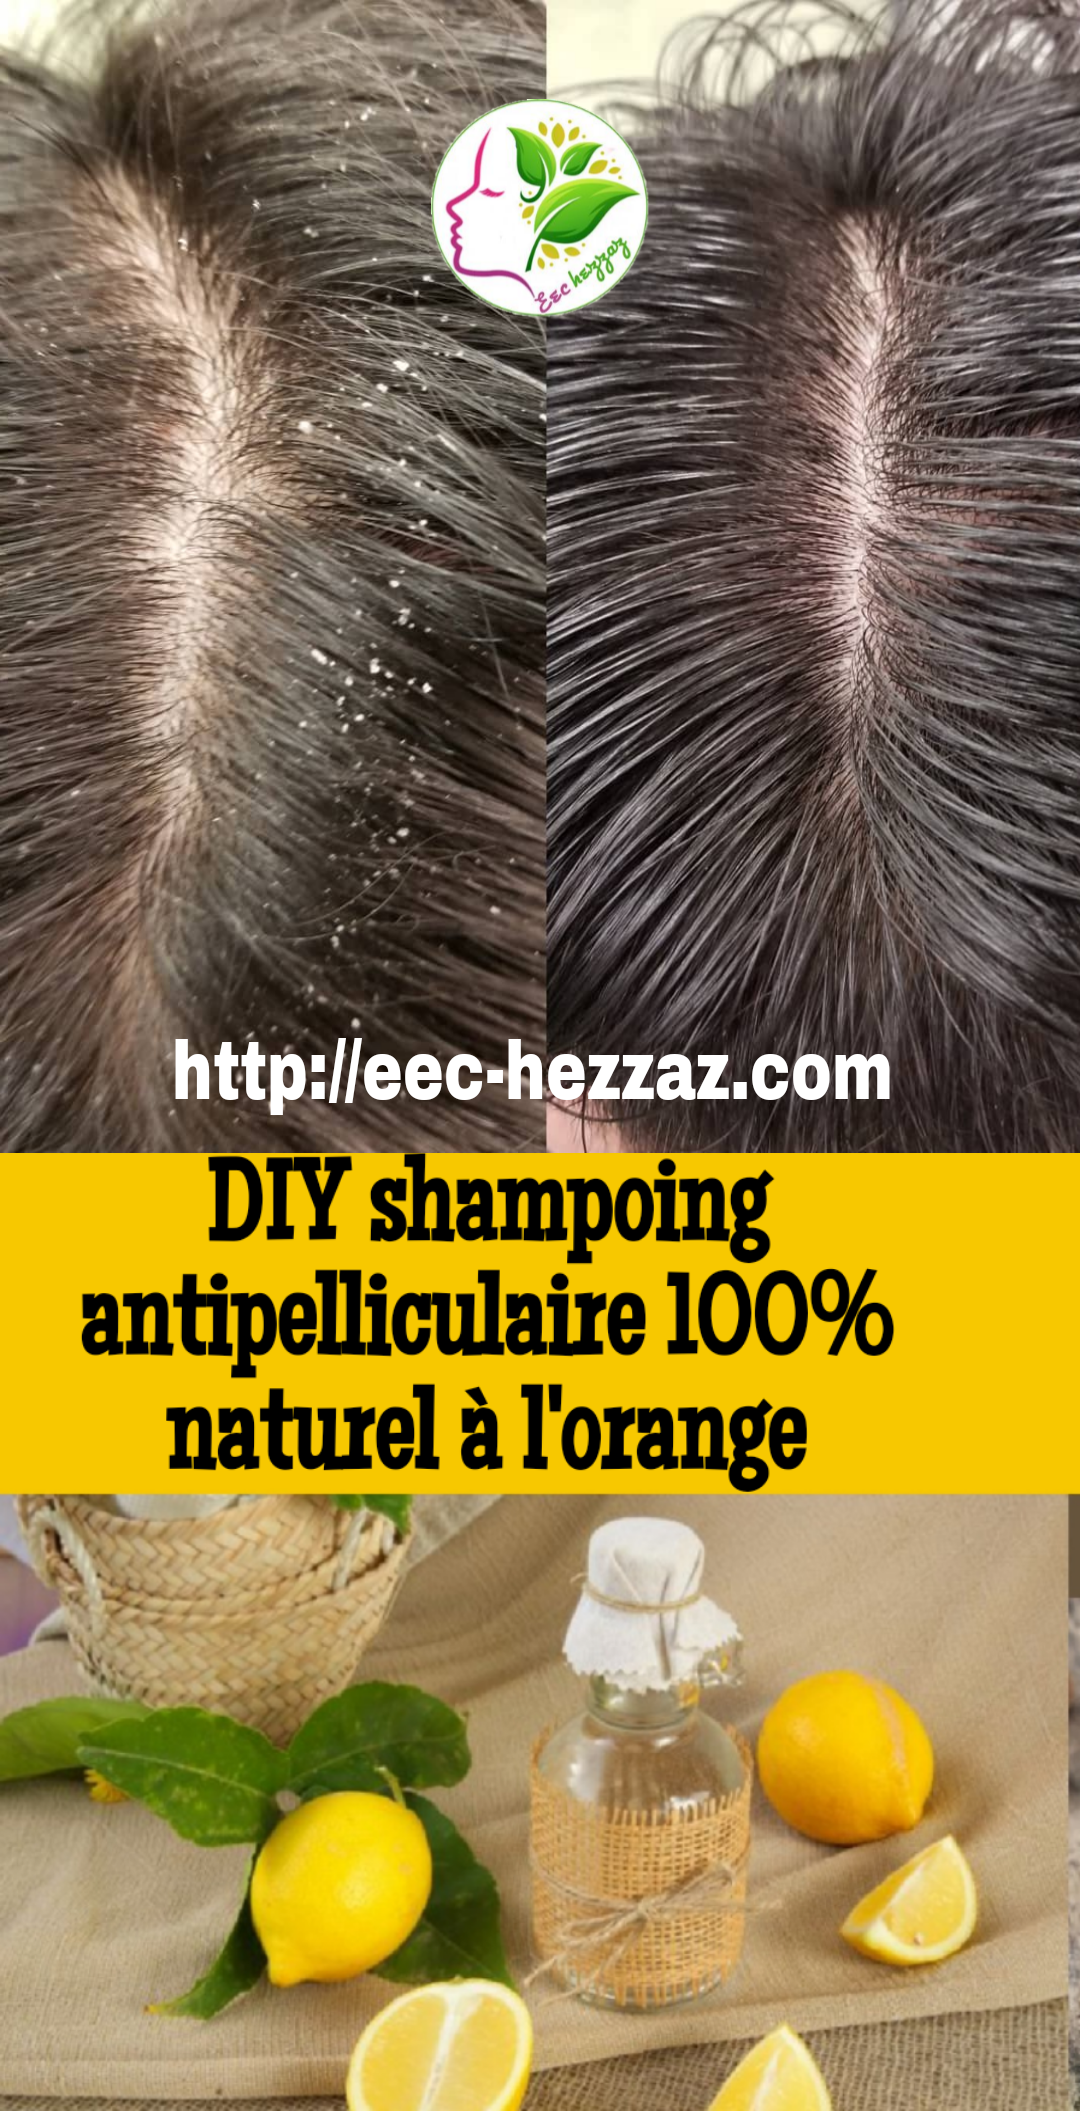 DIY shampoing antipelliculaire 100% naturel à l'orange